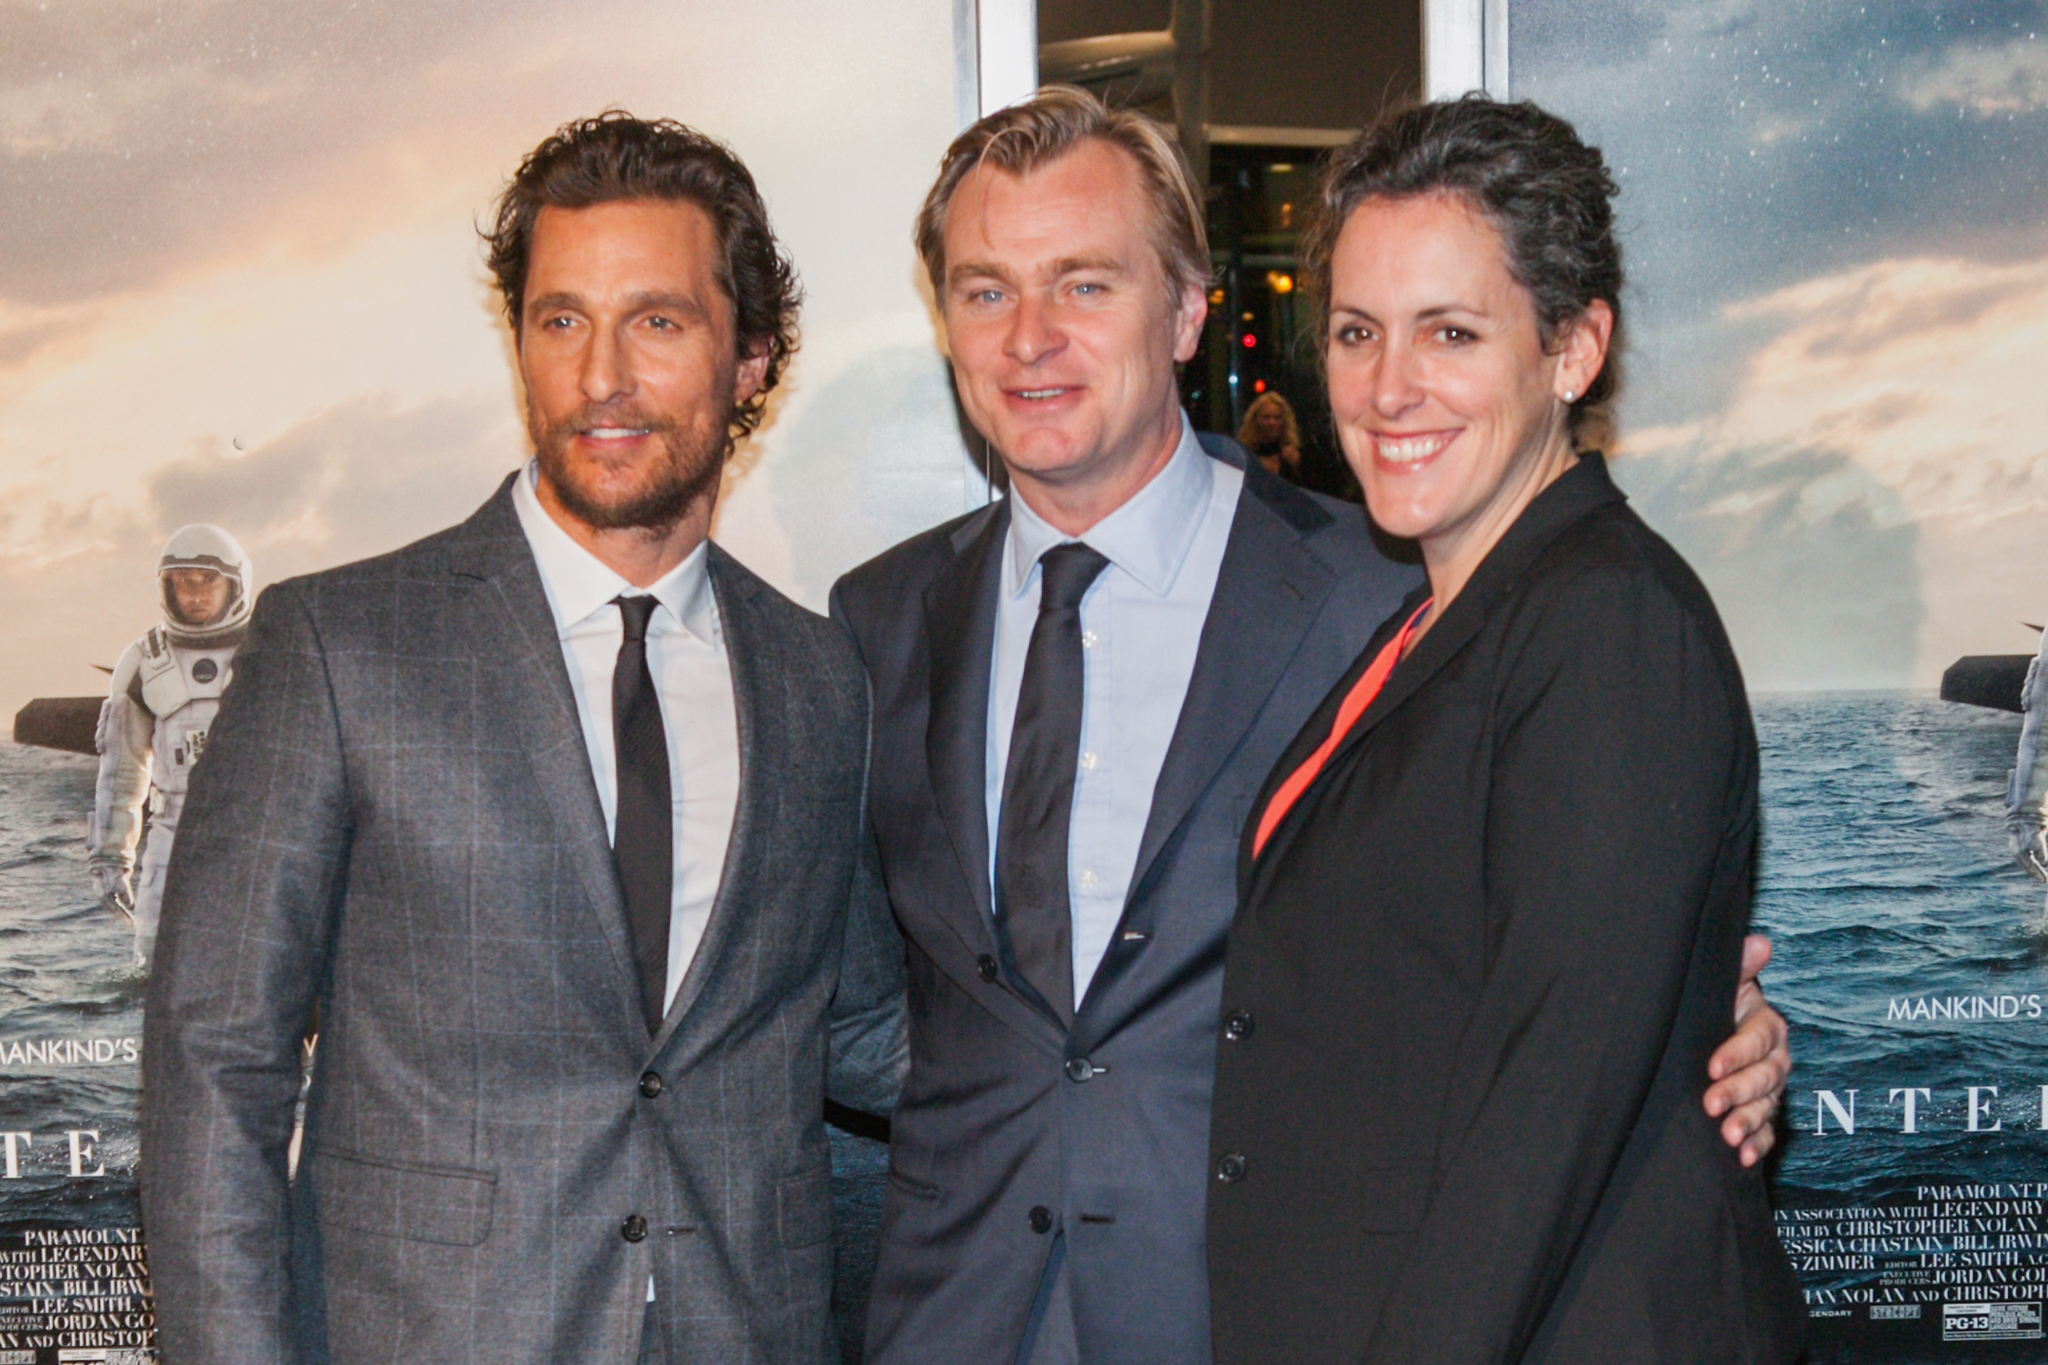 Matthew McConaughey, Christopher Nolan and Emma Thomas at event of Tarp zvaigzdziu (2014)